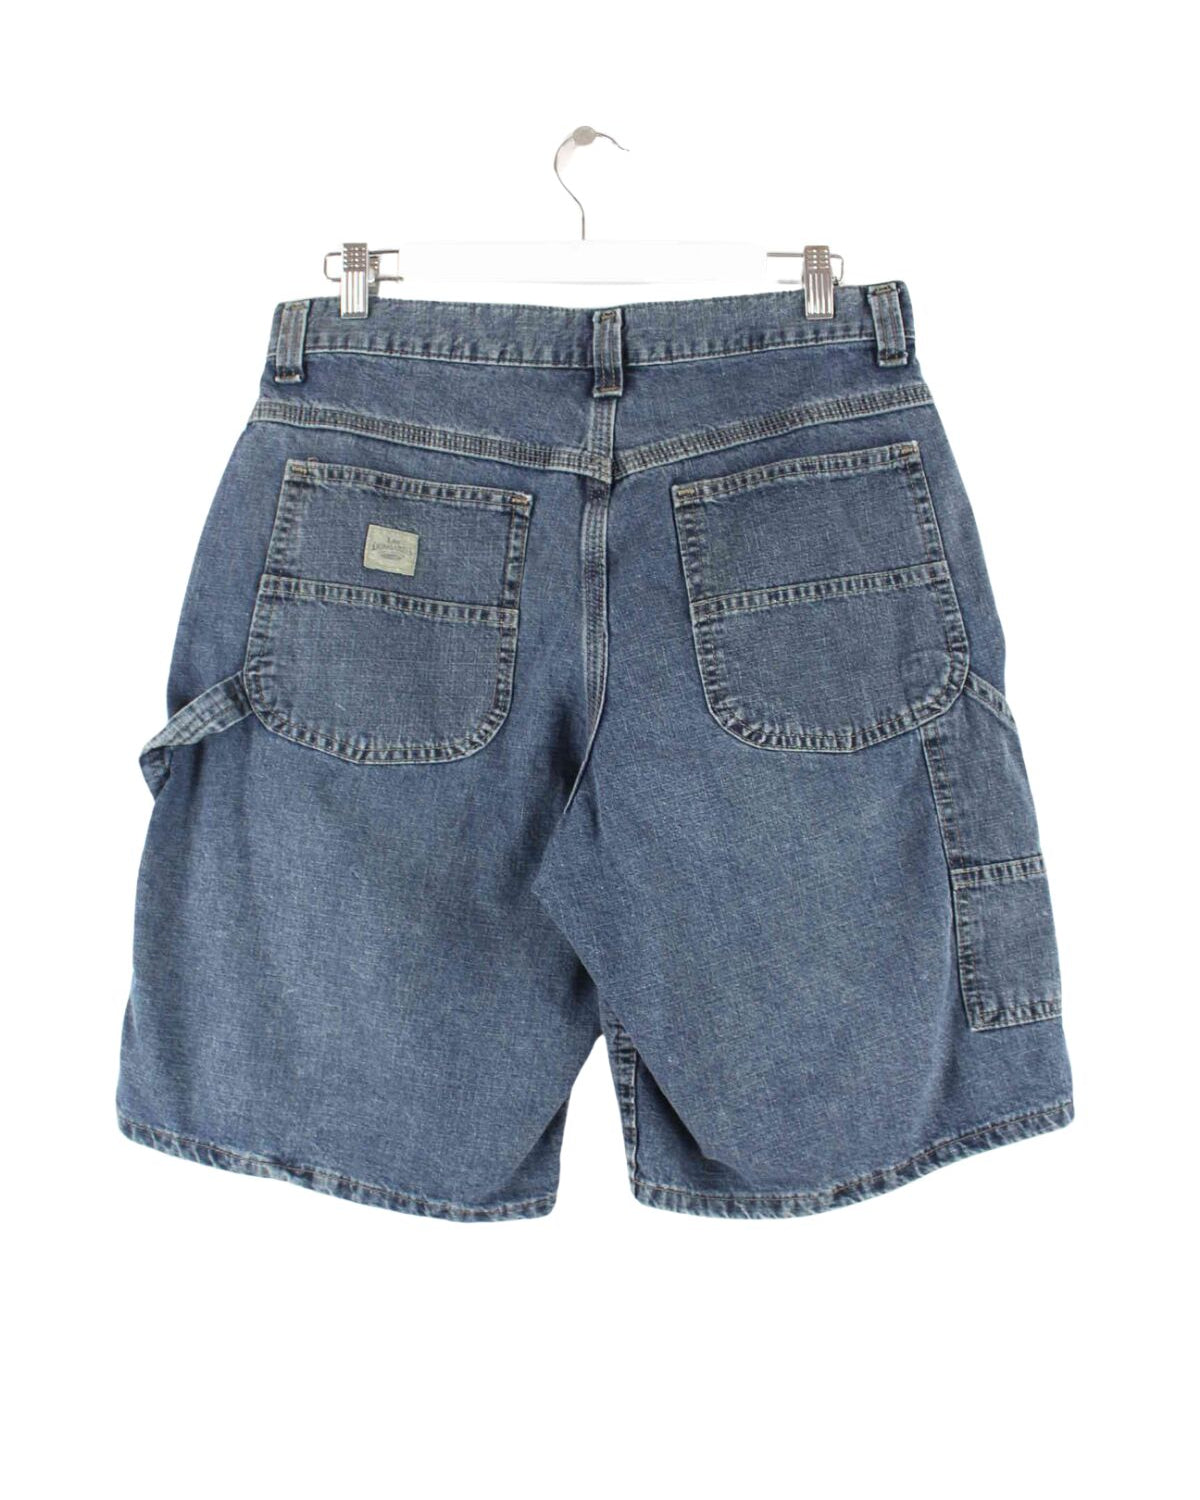 Lee y2k Carpenter Jorts/Jeans Shorts Blau W30 (back image)